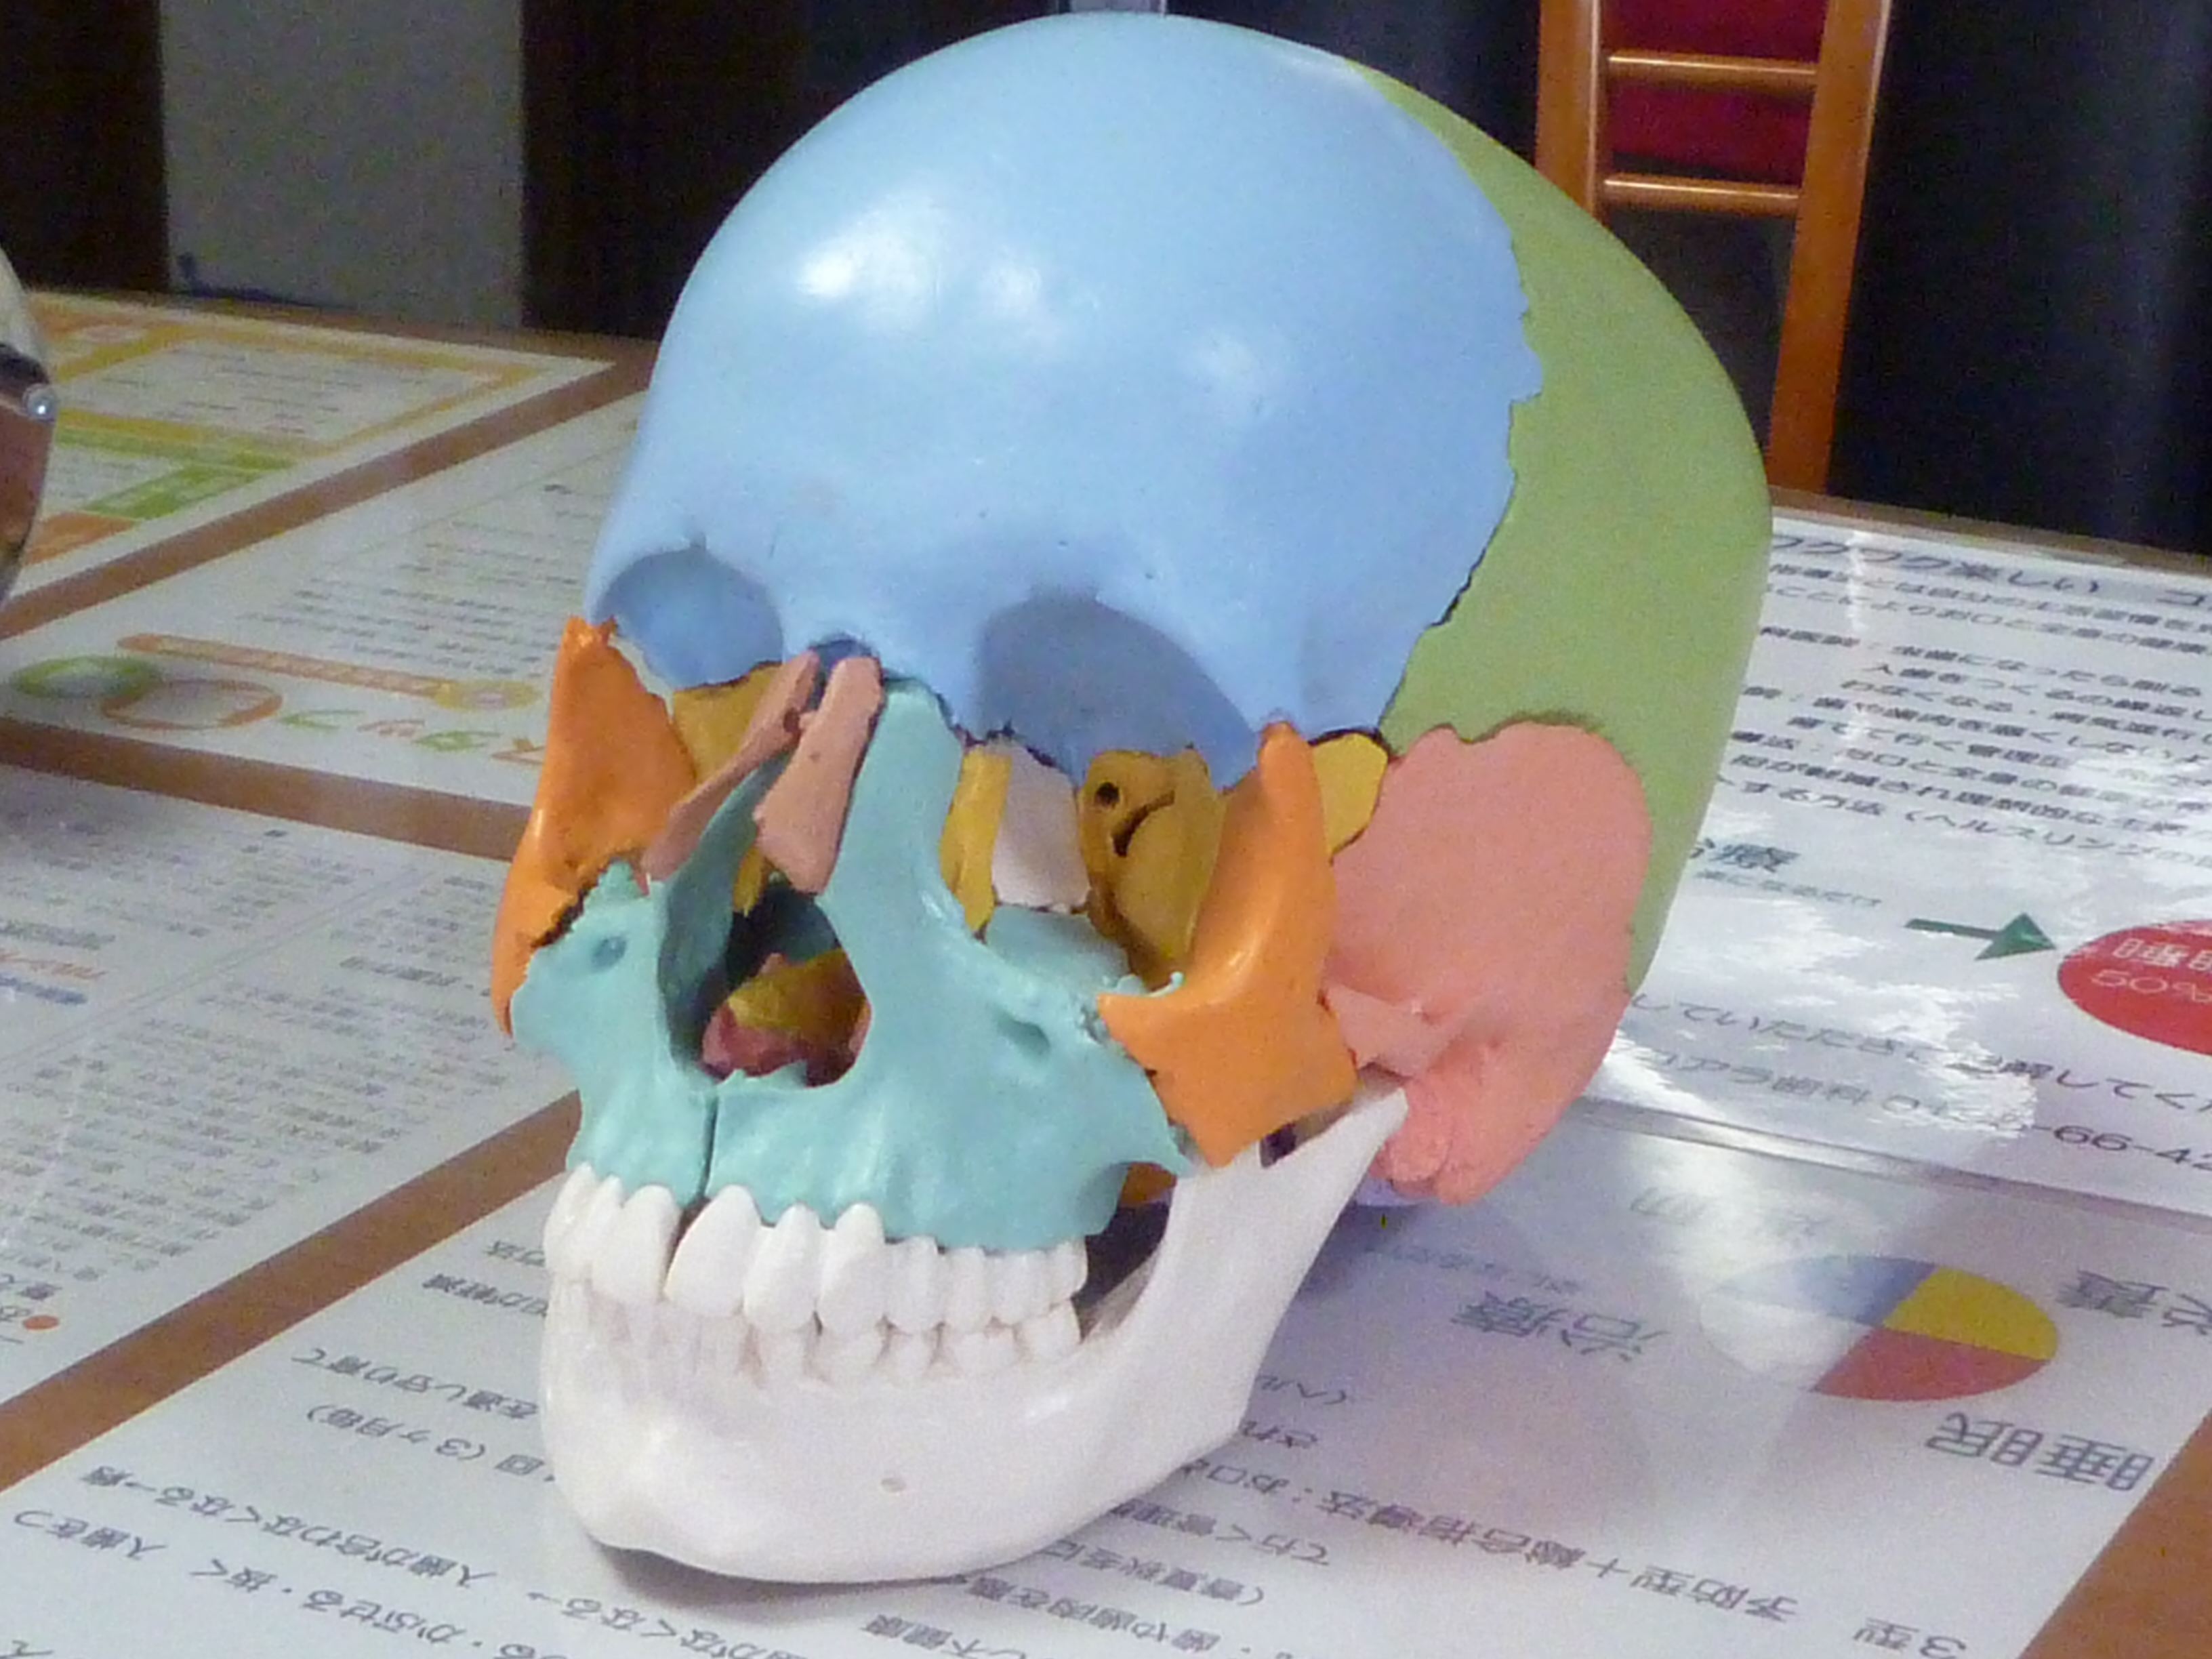 詳しく説明する為に頭蓋骨模型を使っています。